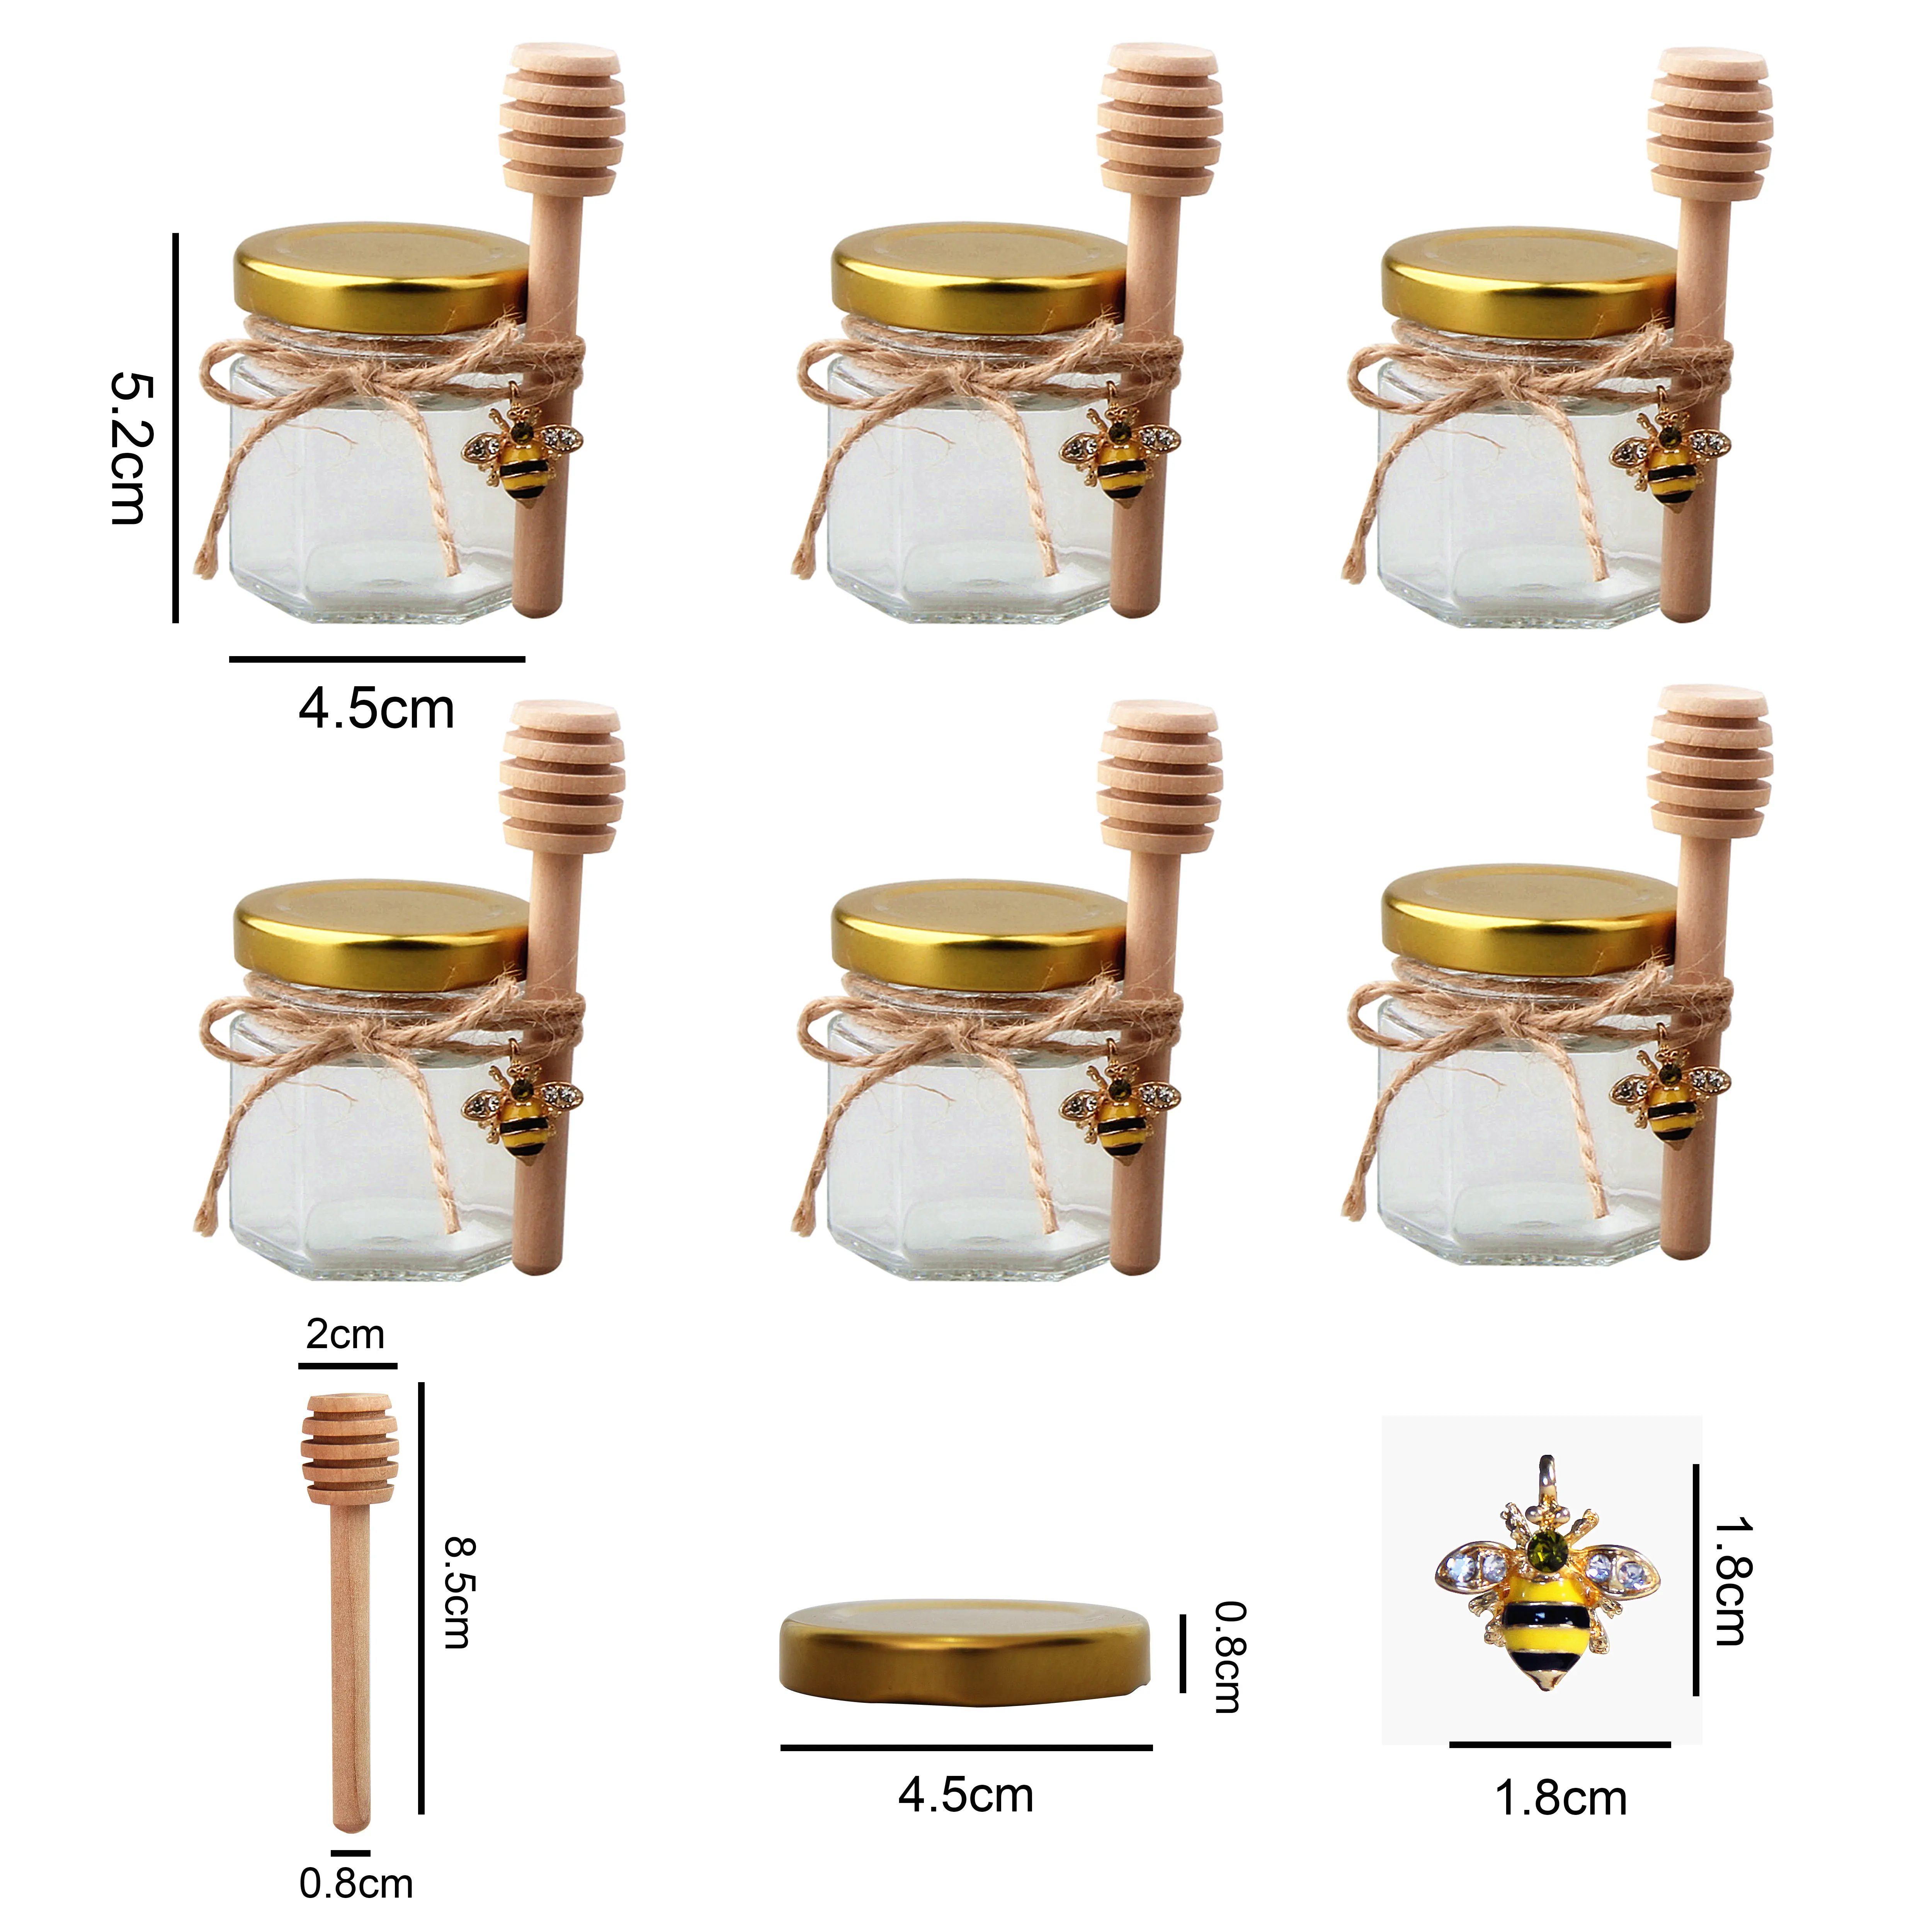 1.5ออนซ์ที่นิยมการจัดเก็บขวดแก้วหกเหลี่ยมขวดน้ำผึ้งสำหรับบ้านทำและการจัดเก็บห้องครัว